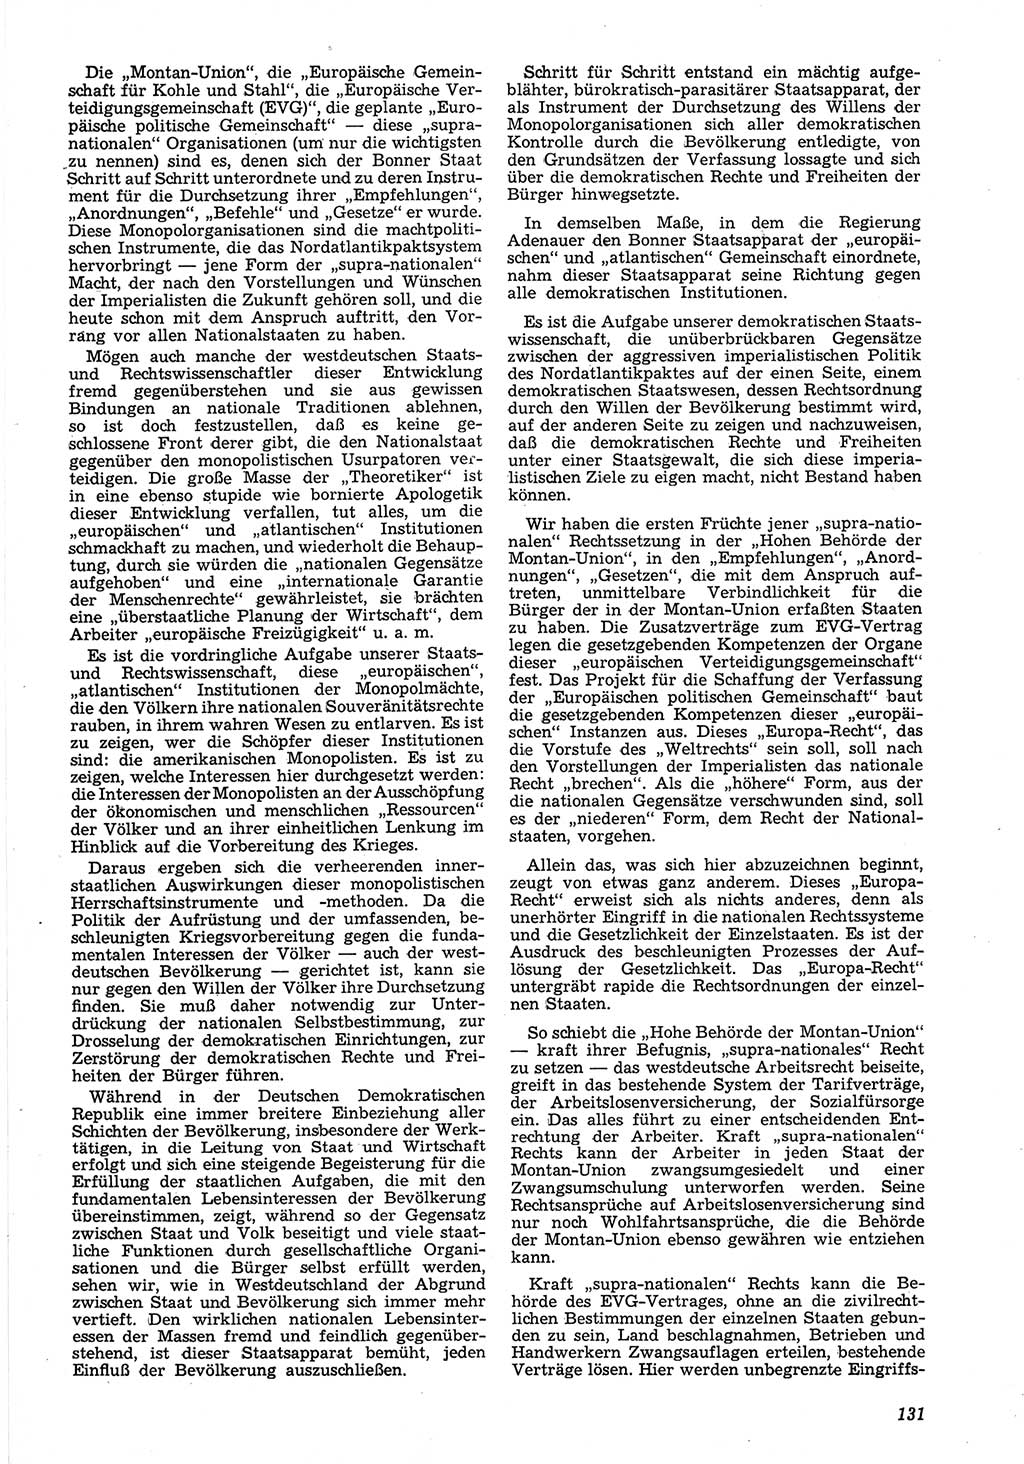 Neue Justiz (NJ), Zeitschrift für Recht und Rechtswissenschaft [Deutsche Demokratische Republik (DDR)], 8. Jahrgang 1954, Seite 131 (NJ DDR 1954, S. 131)